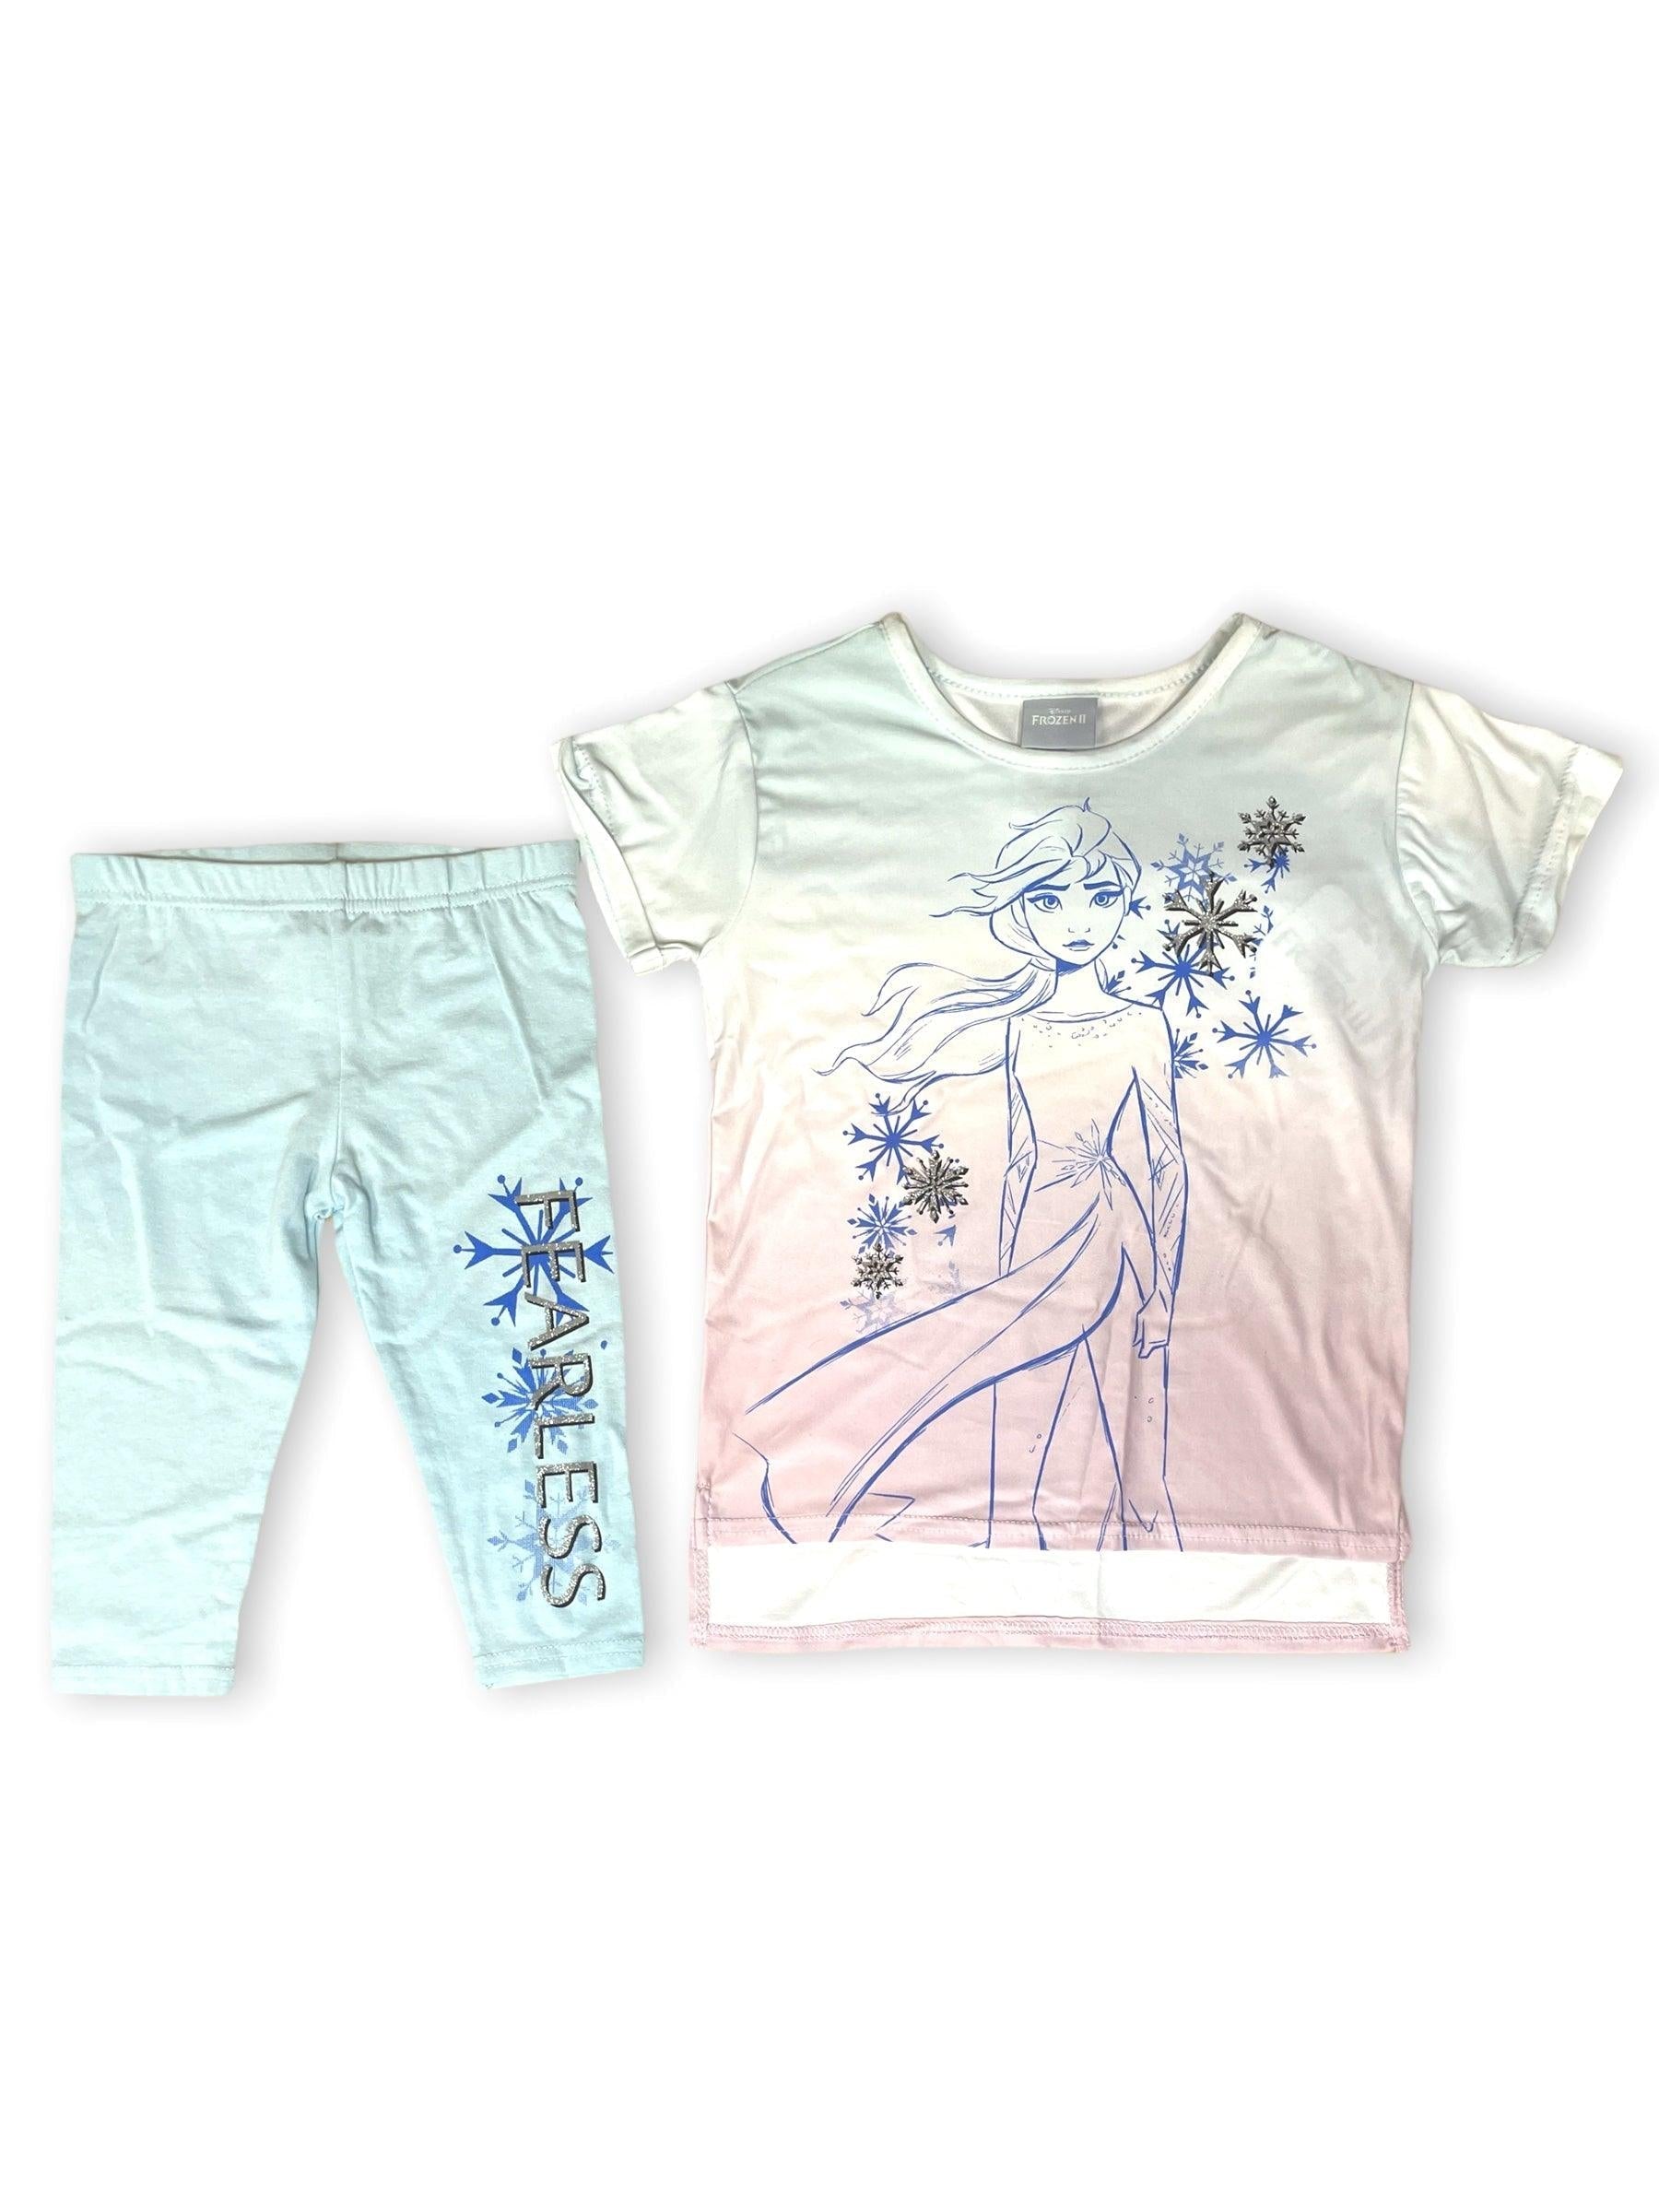 Frozen 2 Inspired Elsa Jersey Knit Girls leggings, Elsa Leggings 2 years |  eBay